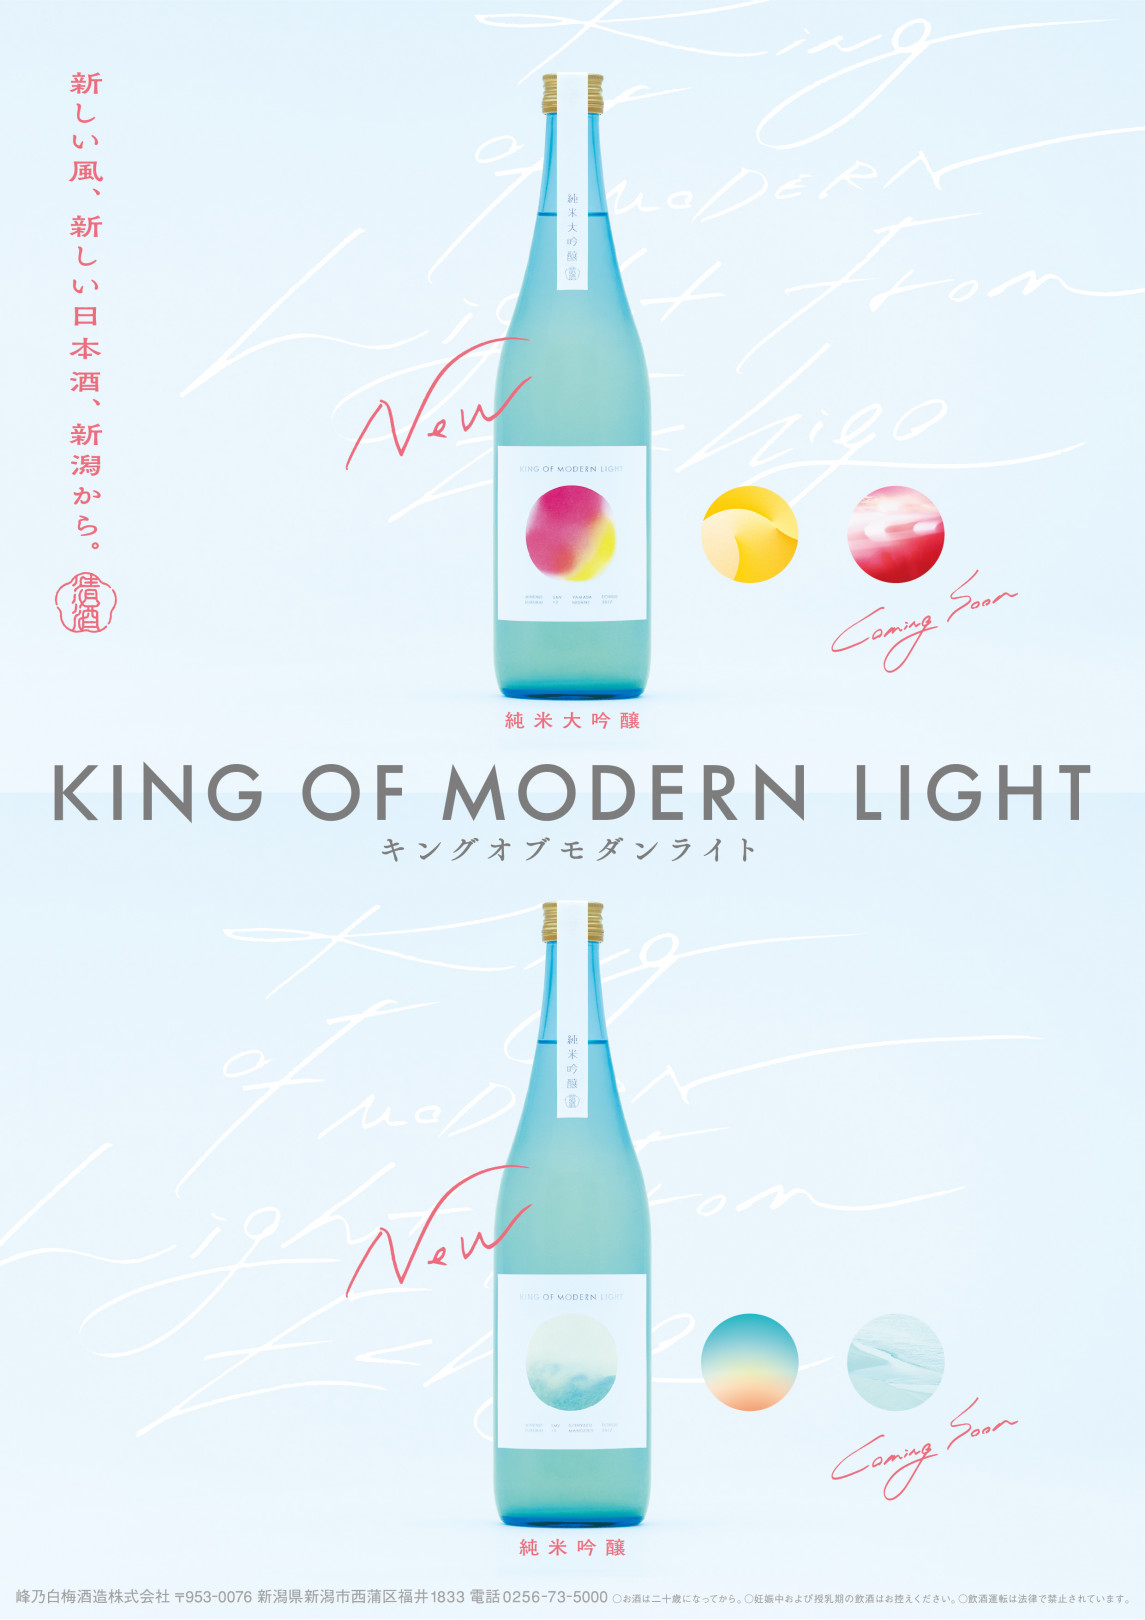 峰乃白梅酒造から新ライン「KING OF MODERN LIGHT」が登場